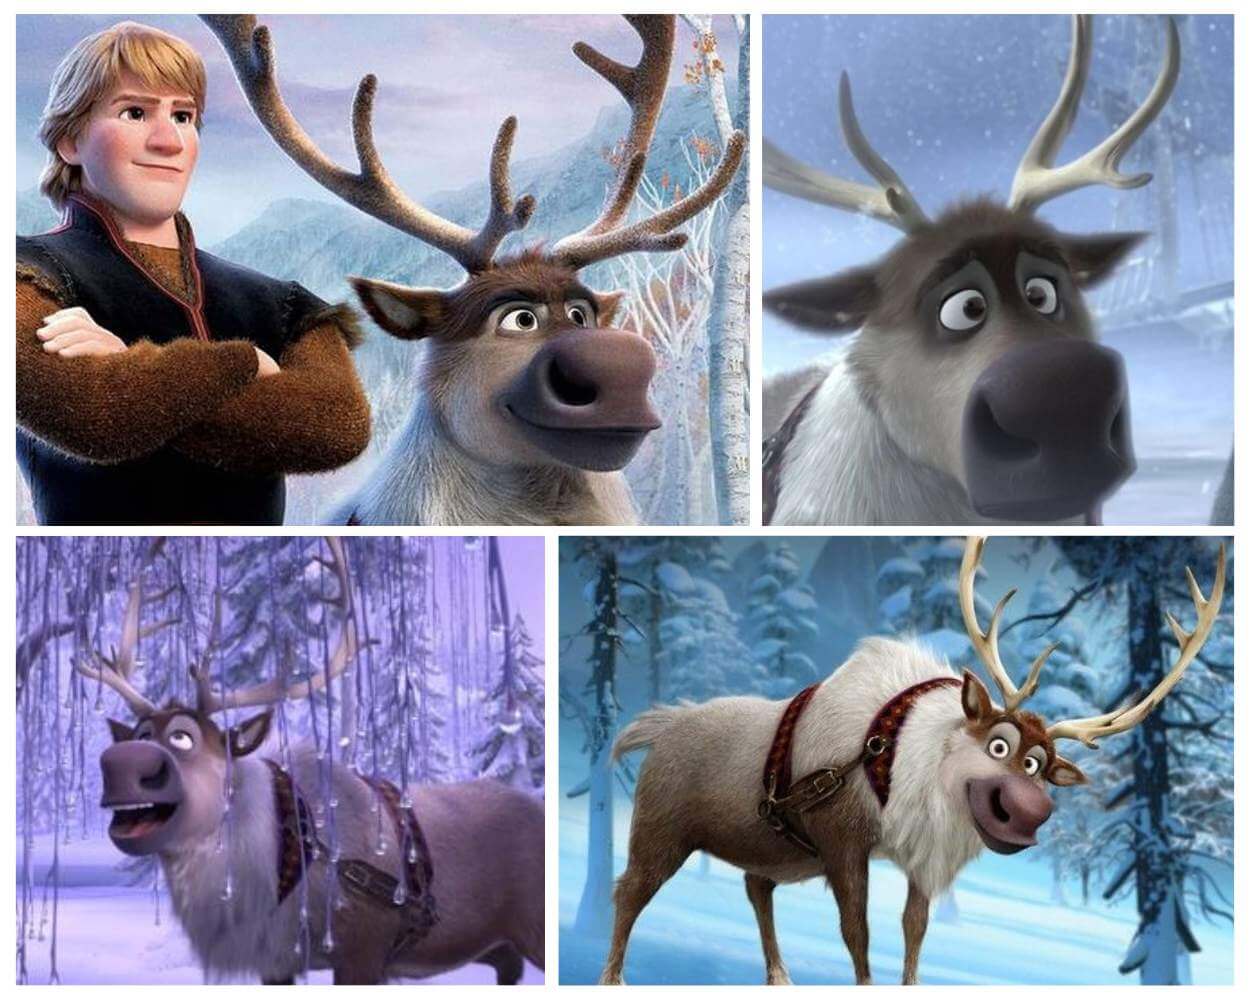 Sven - frozen cartoon characters